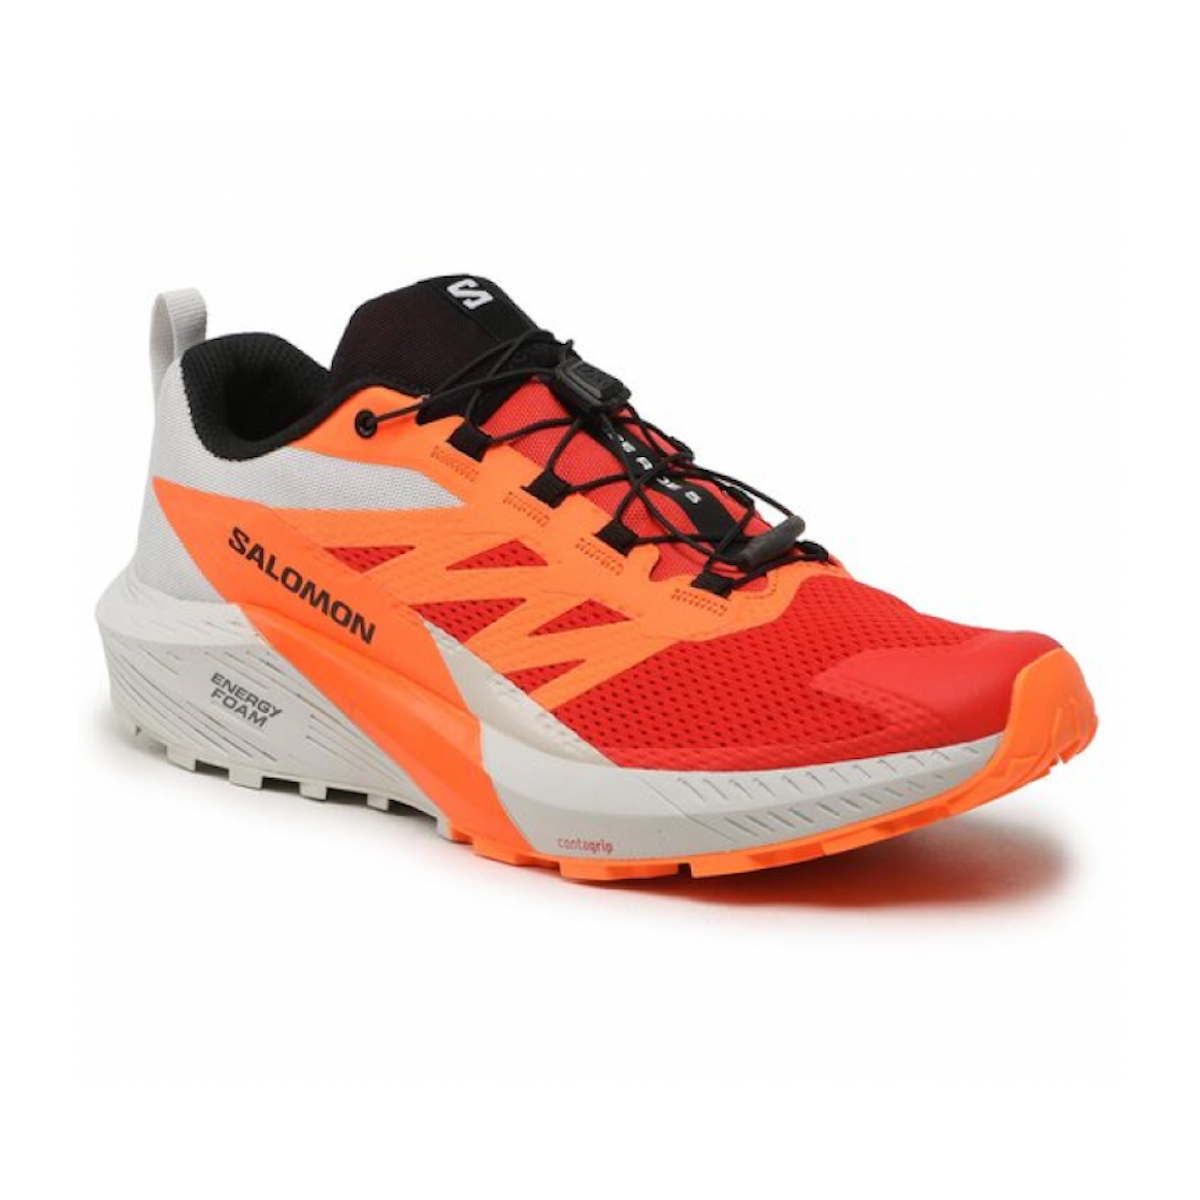 SALOMON SENSE RIDE 5 trail running shoes - grey/orange/red